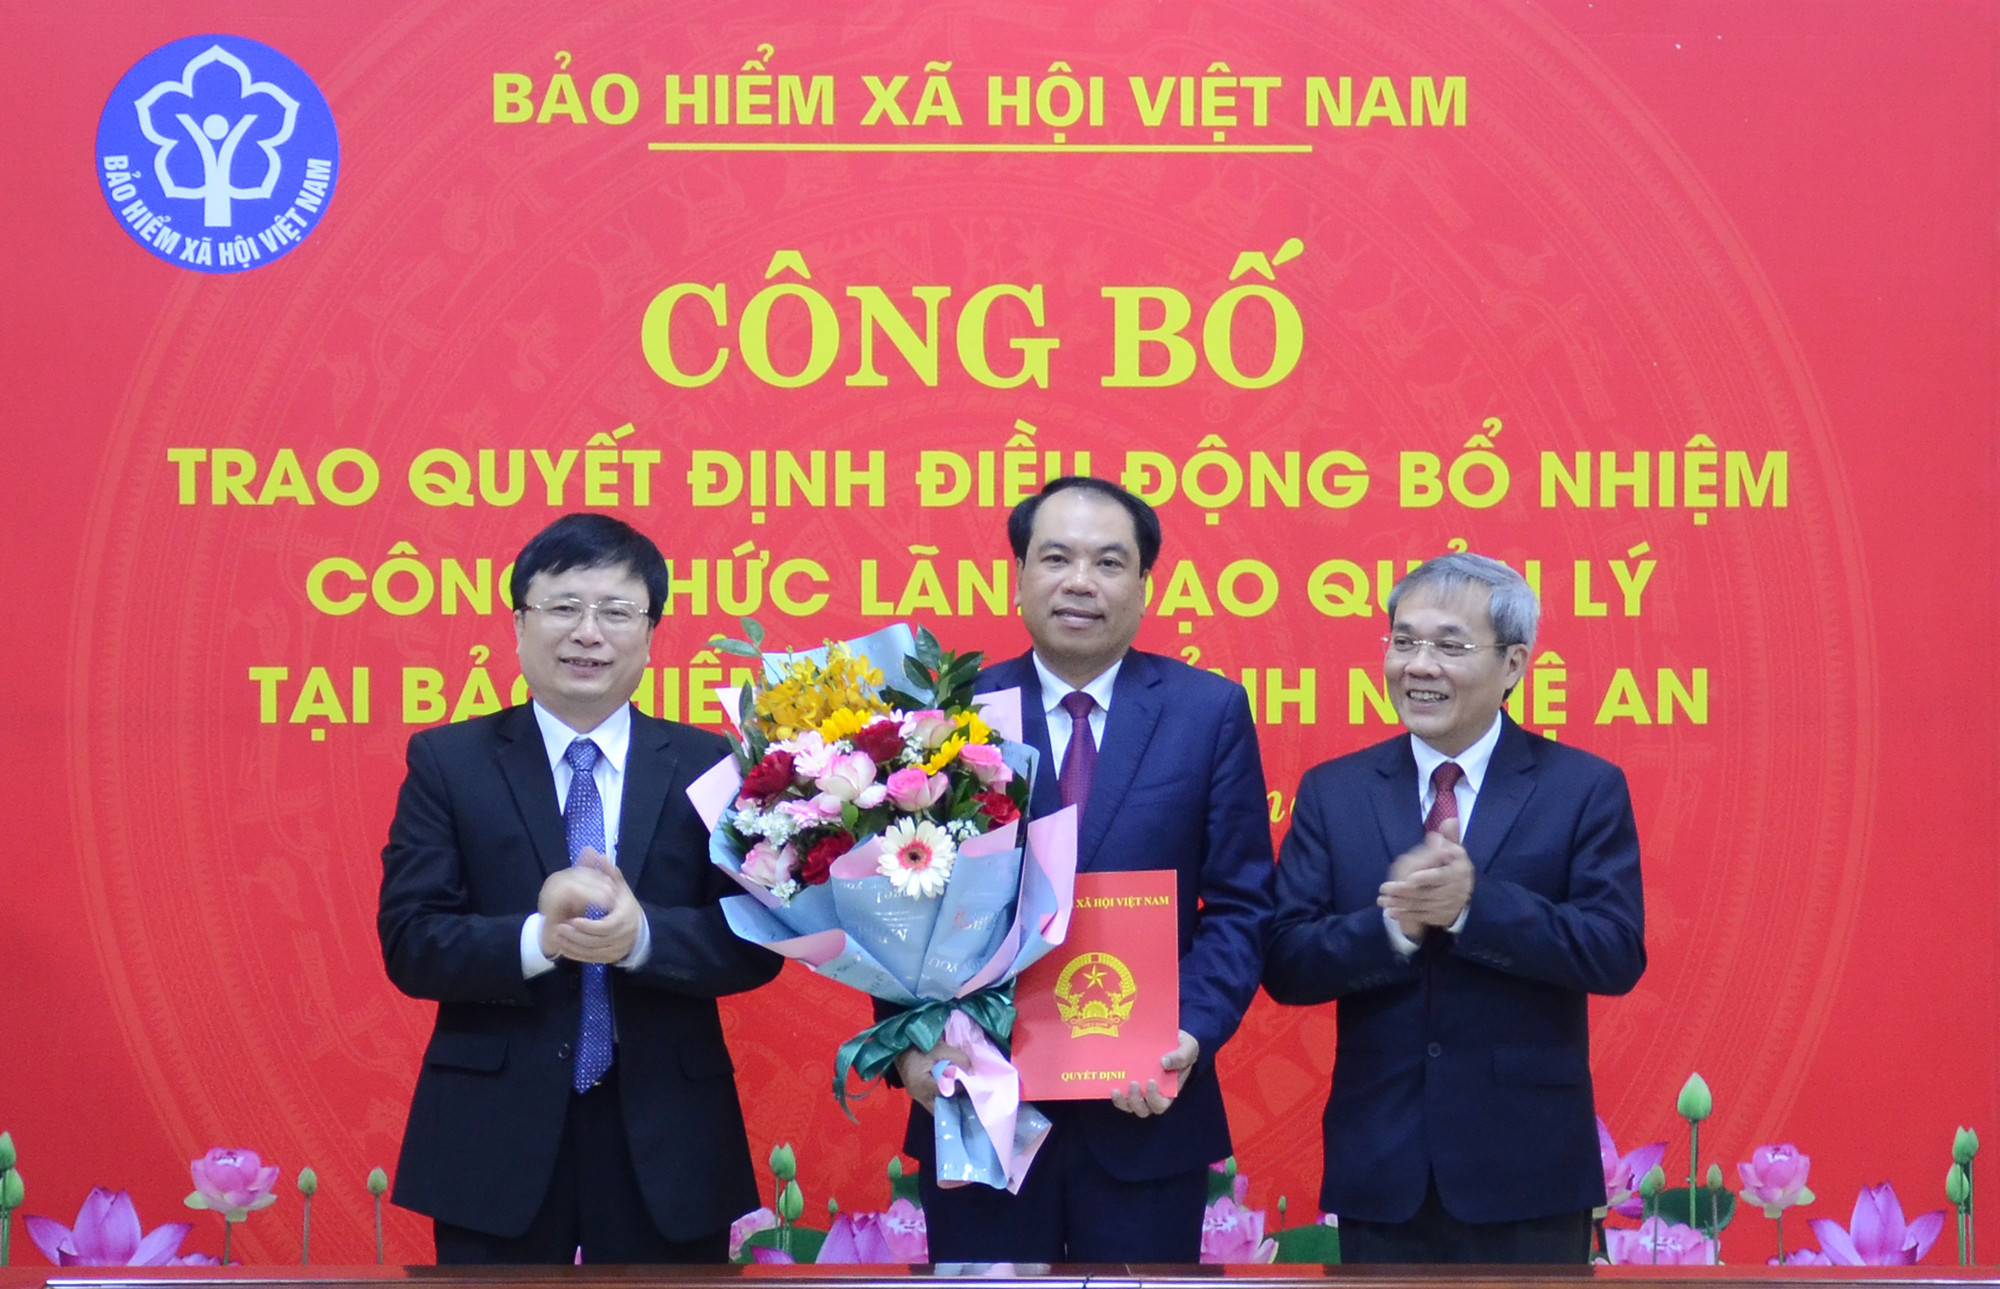 Lãnh đạo BHXH Việt Nam, UBND tỉnh Nghệ An trao quyết định bổ nhiệm và tặng hoa cho đồng chí Hoàng Văn Minh. Ảnh: Thành Chung